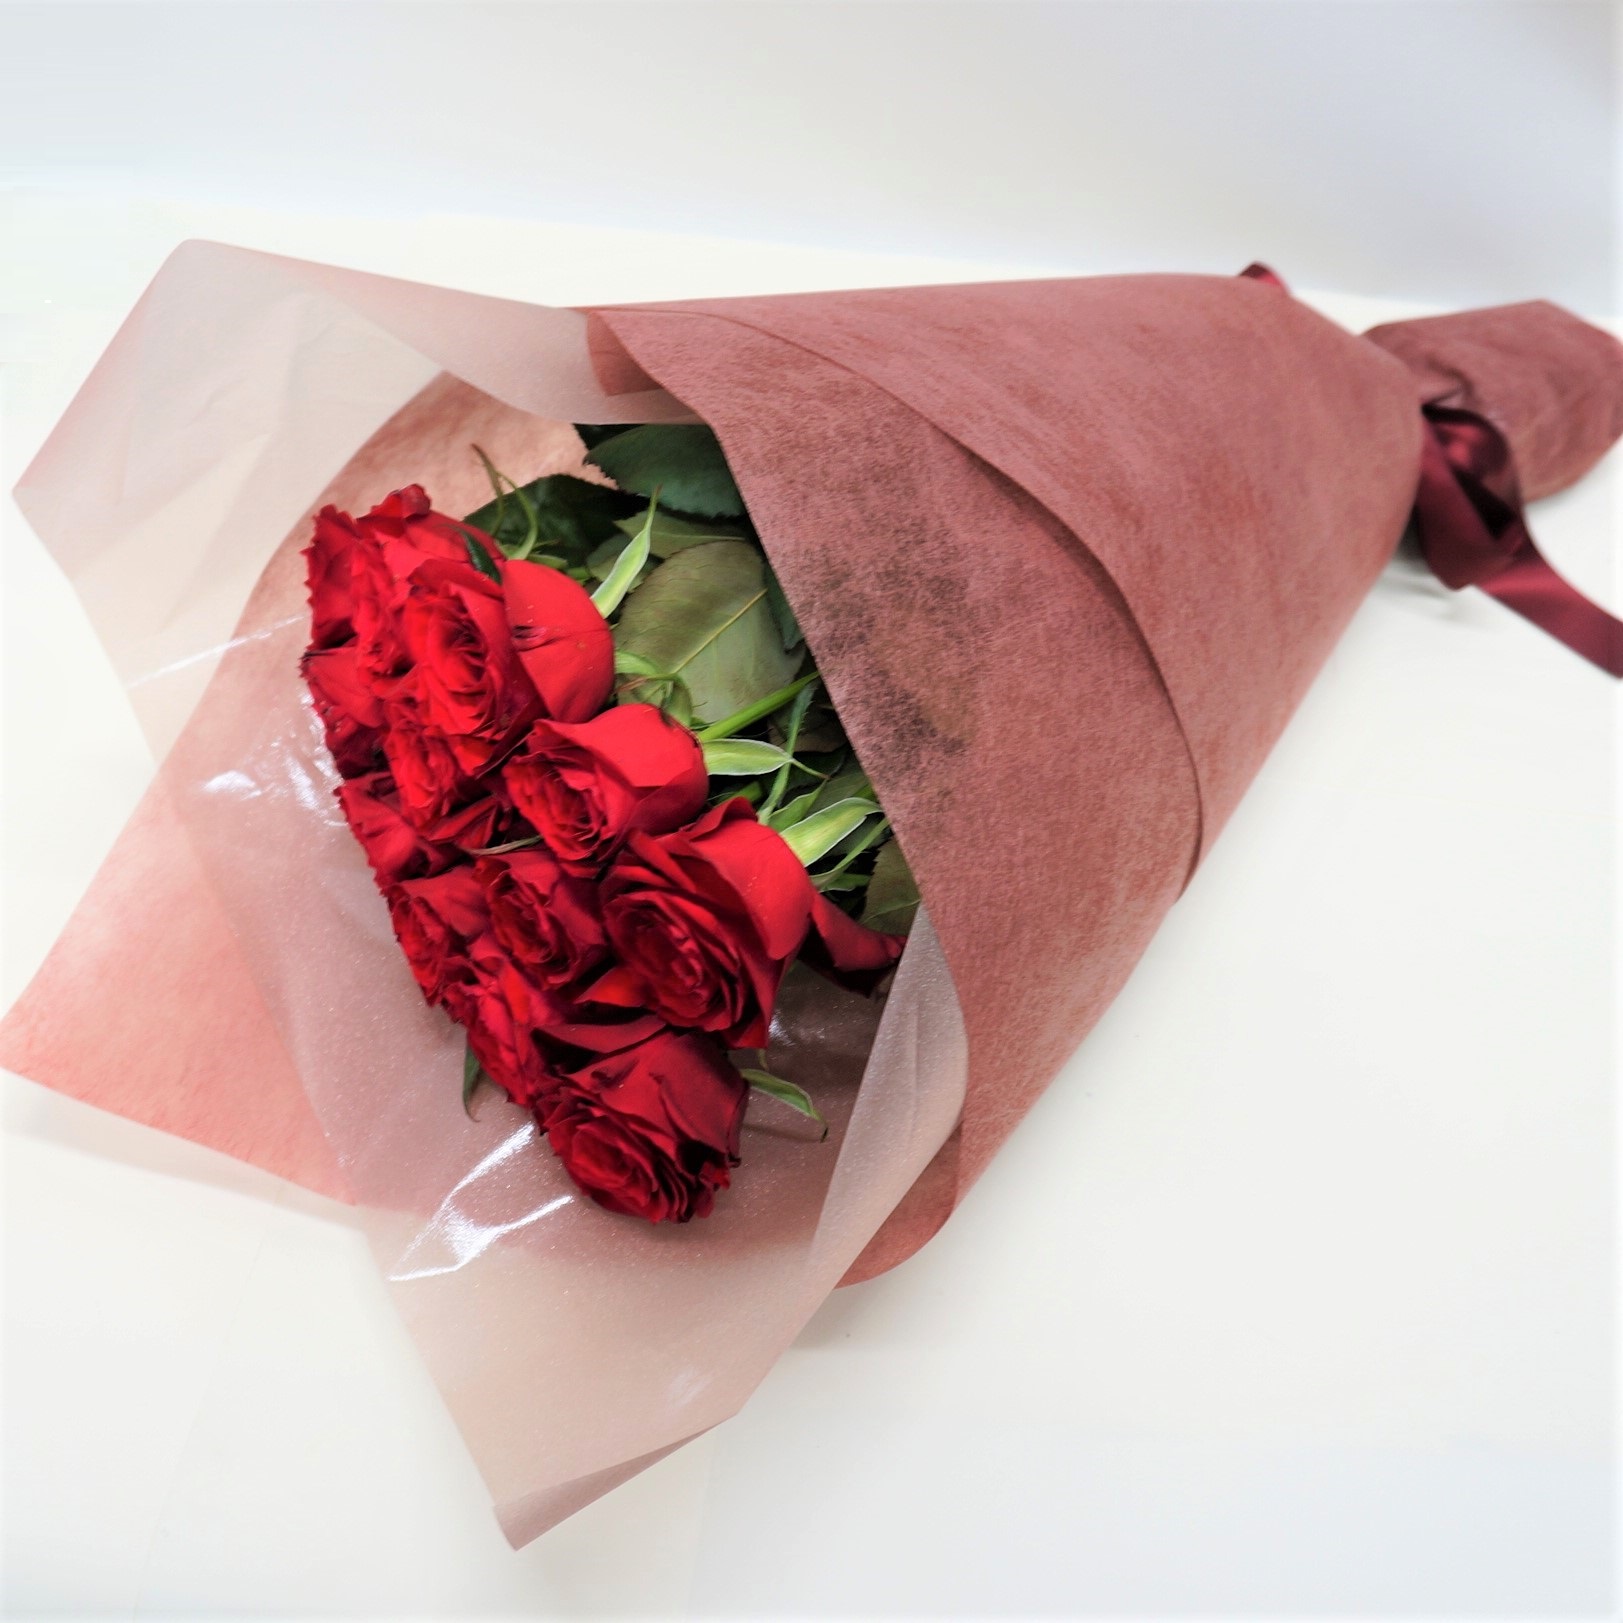 １２本の赤バラで仕上げた ダズンローズの花束です １つ１つ意味の込められたバラが特別感を演出します 大切な人への贈り物にいかがですか？ 送料無料 レッドローズ ロング お祝い アレンジメント 花 フラワー ギフト プレゼント 祝い お礼 超激安 感謝 12本 季節 赤薔薇 評判 生花 女性 ダズンローズ バラ 植物 結婚 花のある暮らし お誕生日 プロポーズ グリーン メッセージカード 自宅用バラ